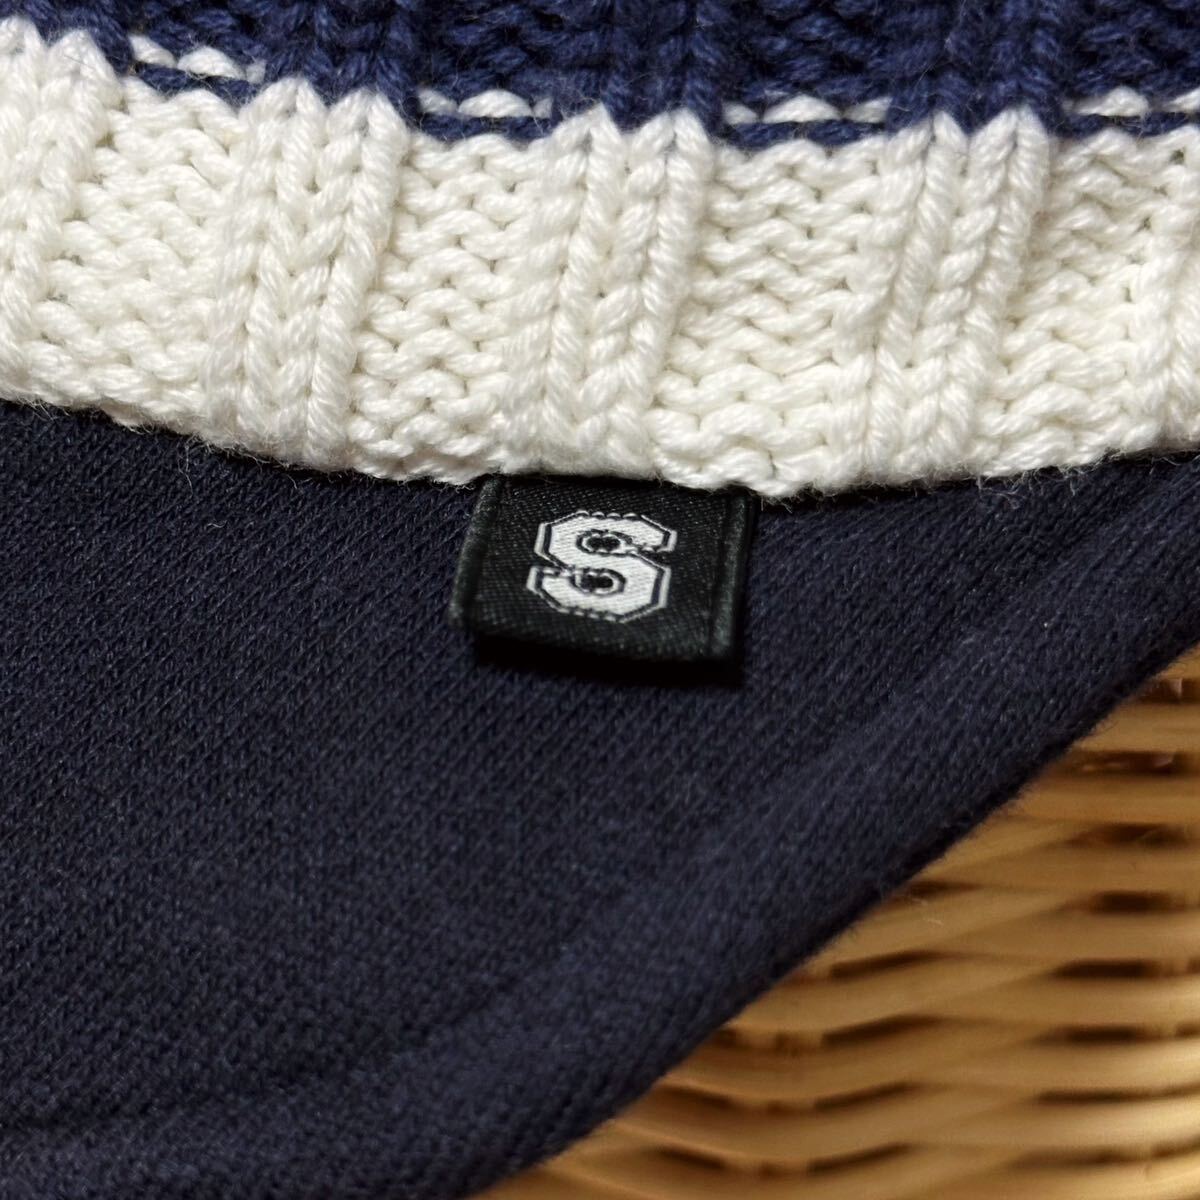 SUBLiME サブライム ツバ付き ニットキャップ キャップ ニット帽 帽子 ボーダー ホワイト×ネイビー ロゴ アウトドア カジュアル ブランド_画像5